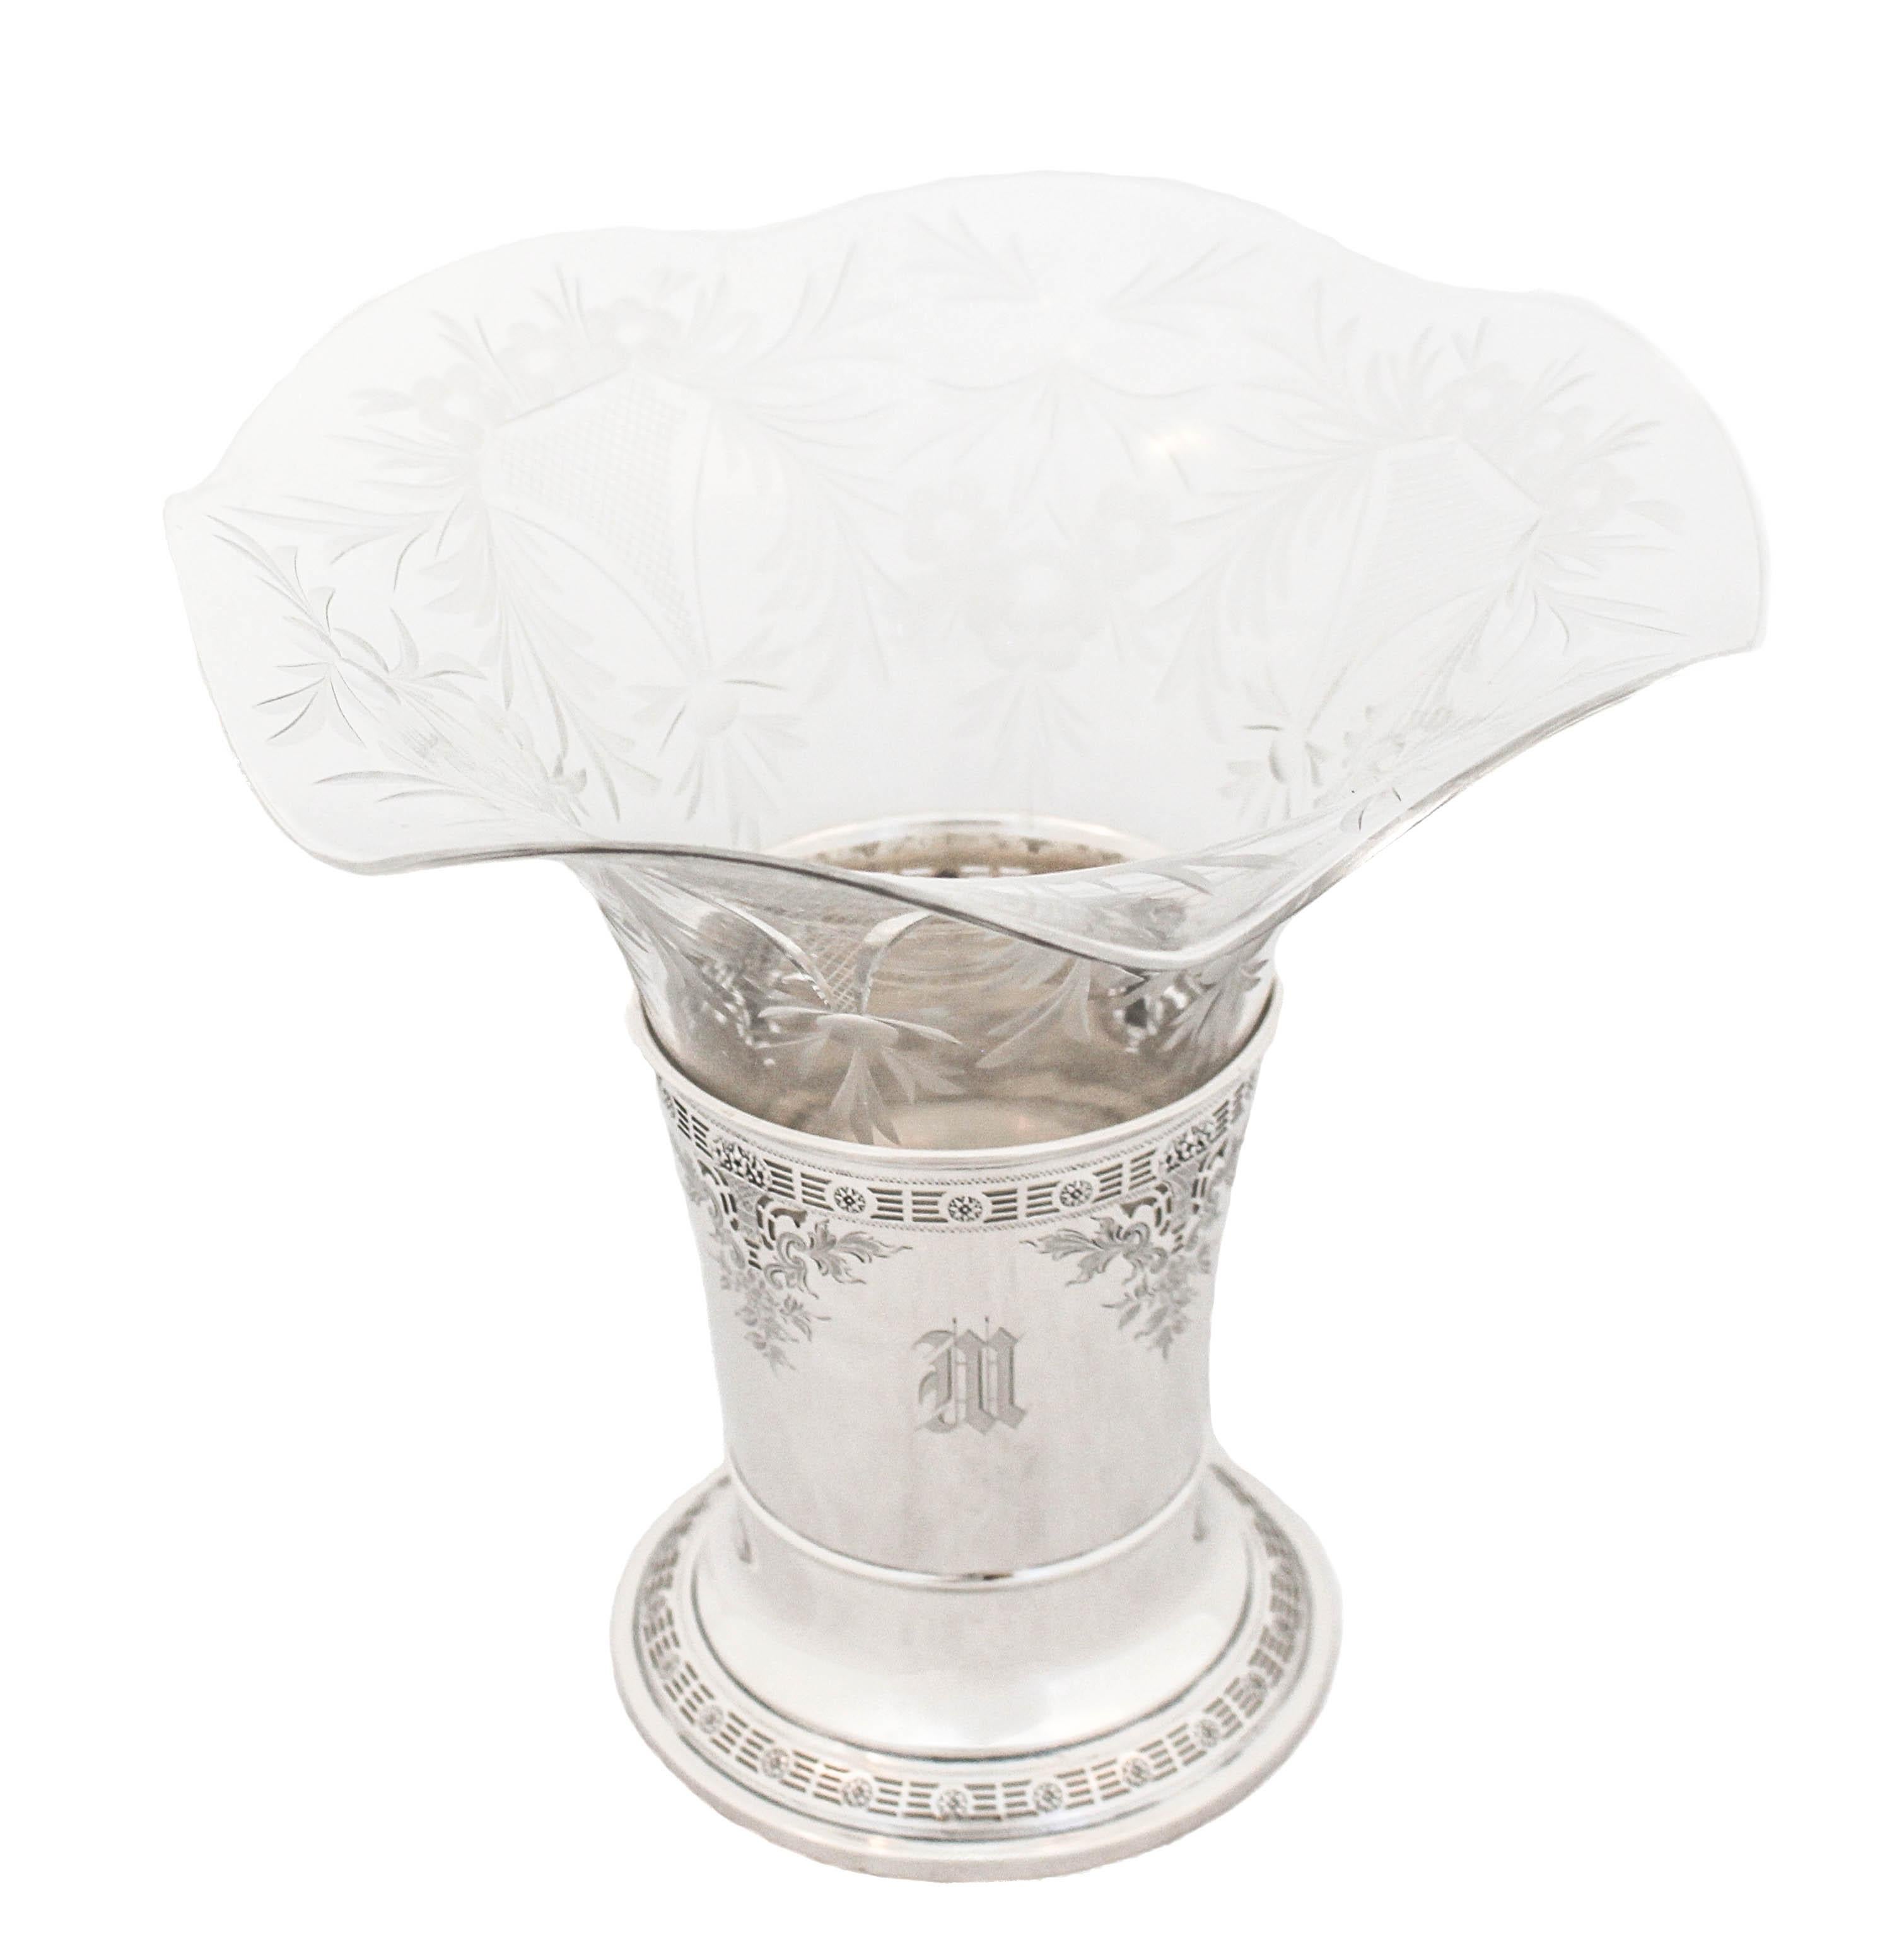 Un vase en argent sterling avec une doublure en cristal de Dominick and Haff est proposé.  La base en sterling présente un motif réticulé autour du milieu et du bas et n'est PAS lestée.  La doublure en cristal est cannelée avec des fleurs et des